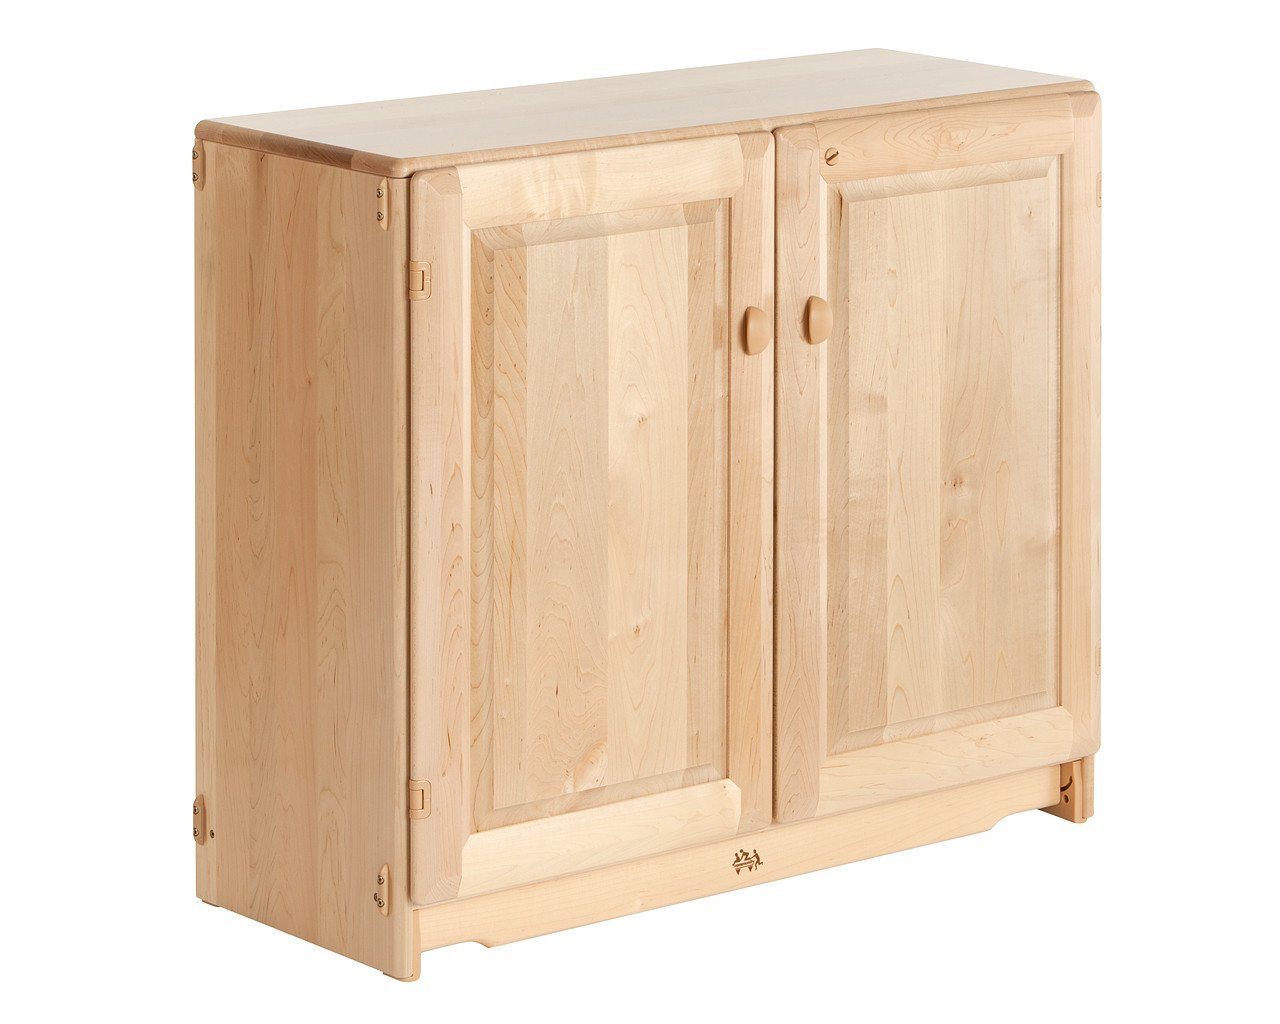 Adjustable Shelf with Doors 3' x 32" by Community Playthings - louisekool